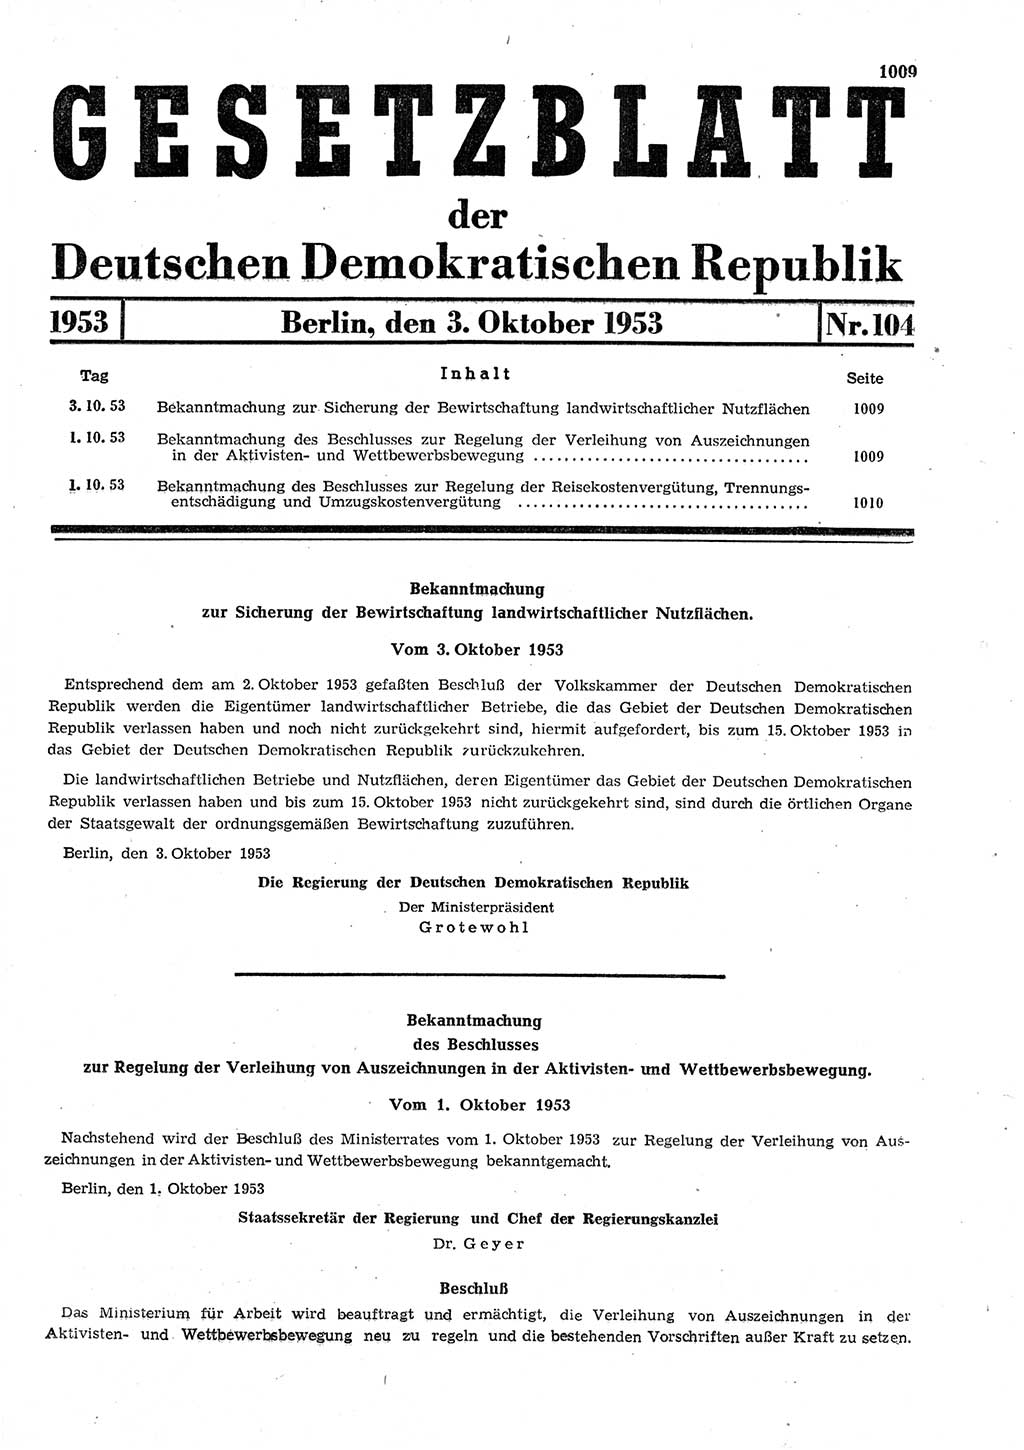 Gesetzblatt (GBl.) der Deutschen Demokratischen Republik (DDR) 1953, Seite 1009 (GBl. DDR 1953, S. 1009)